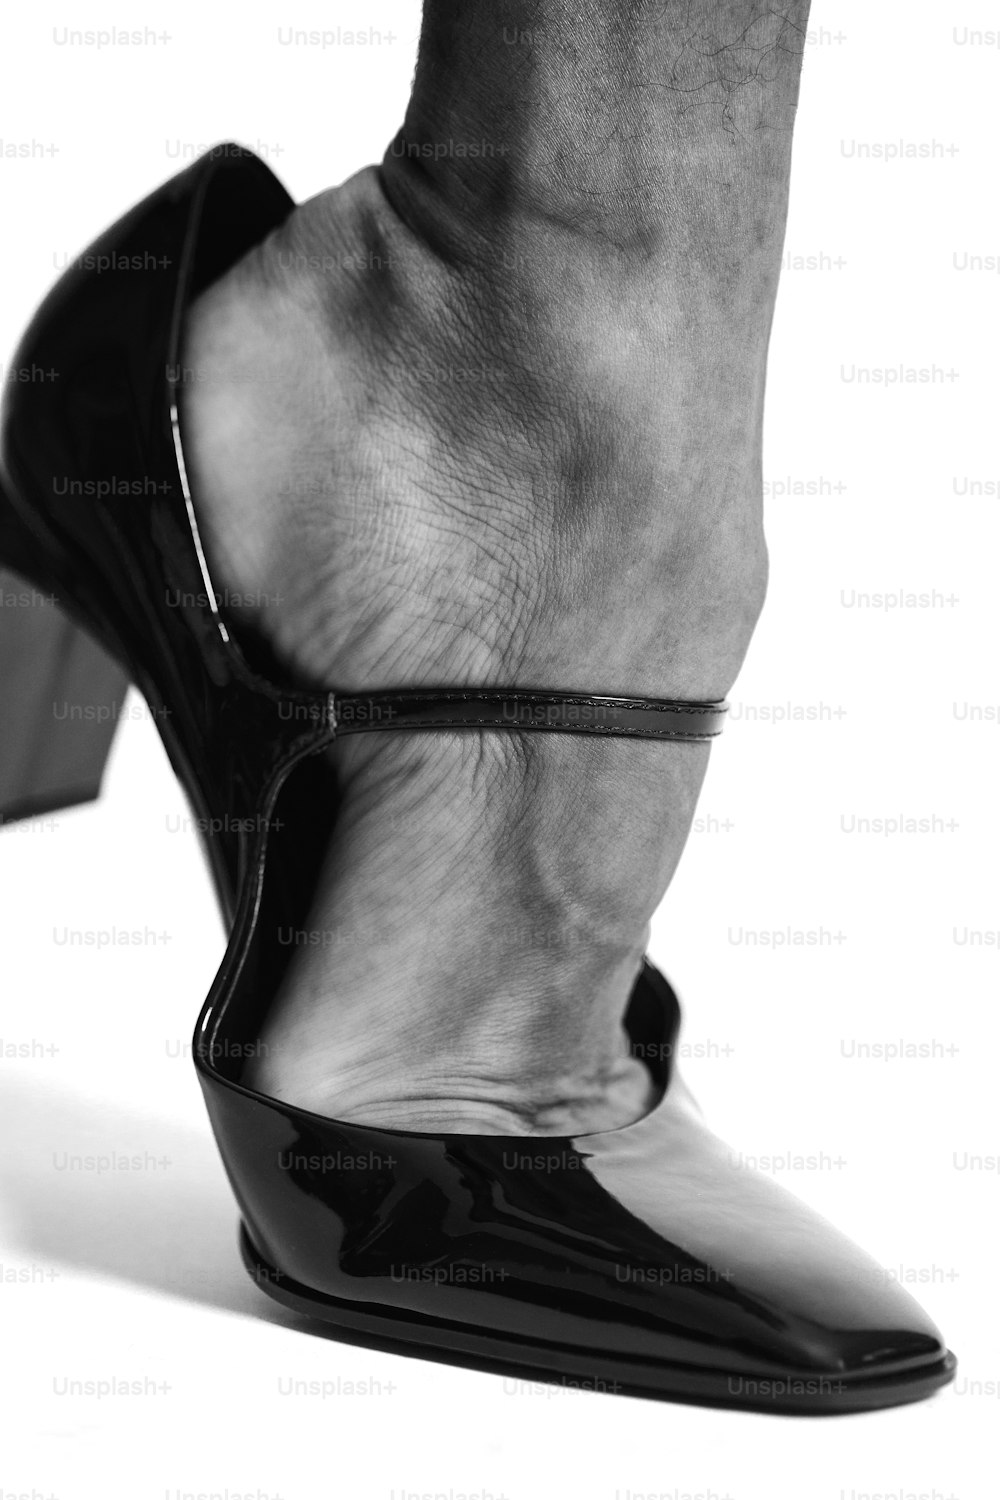 Una foto en blanco y negro de los pies de una mujer